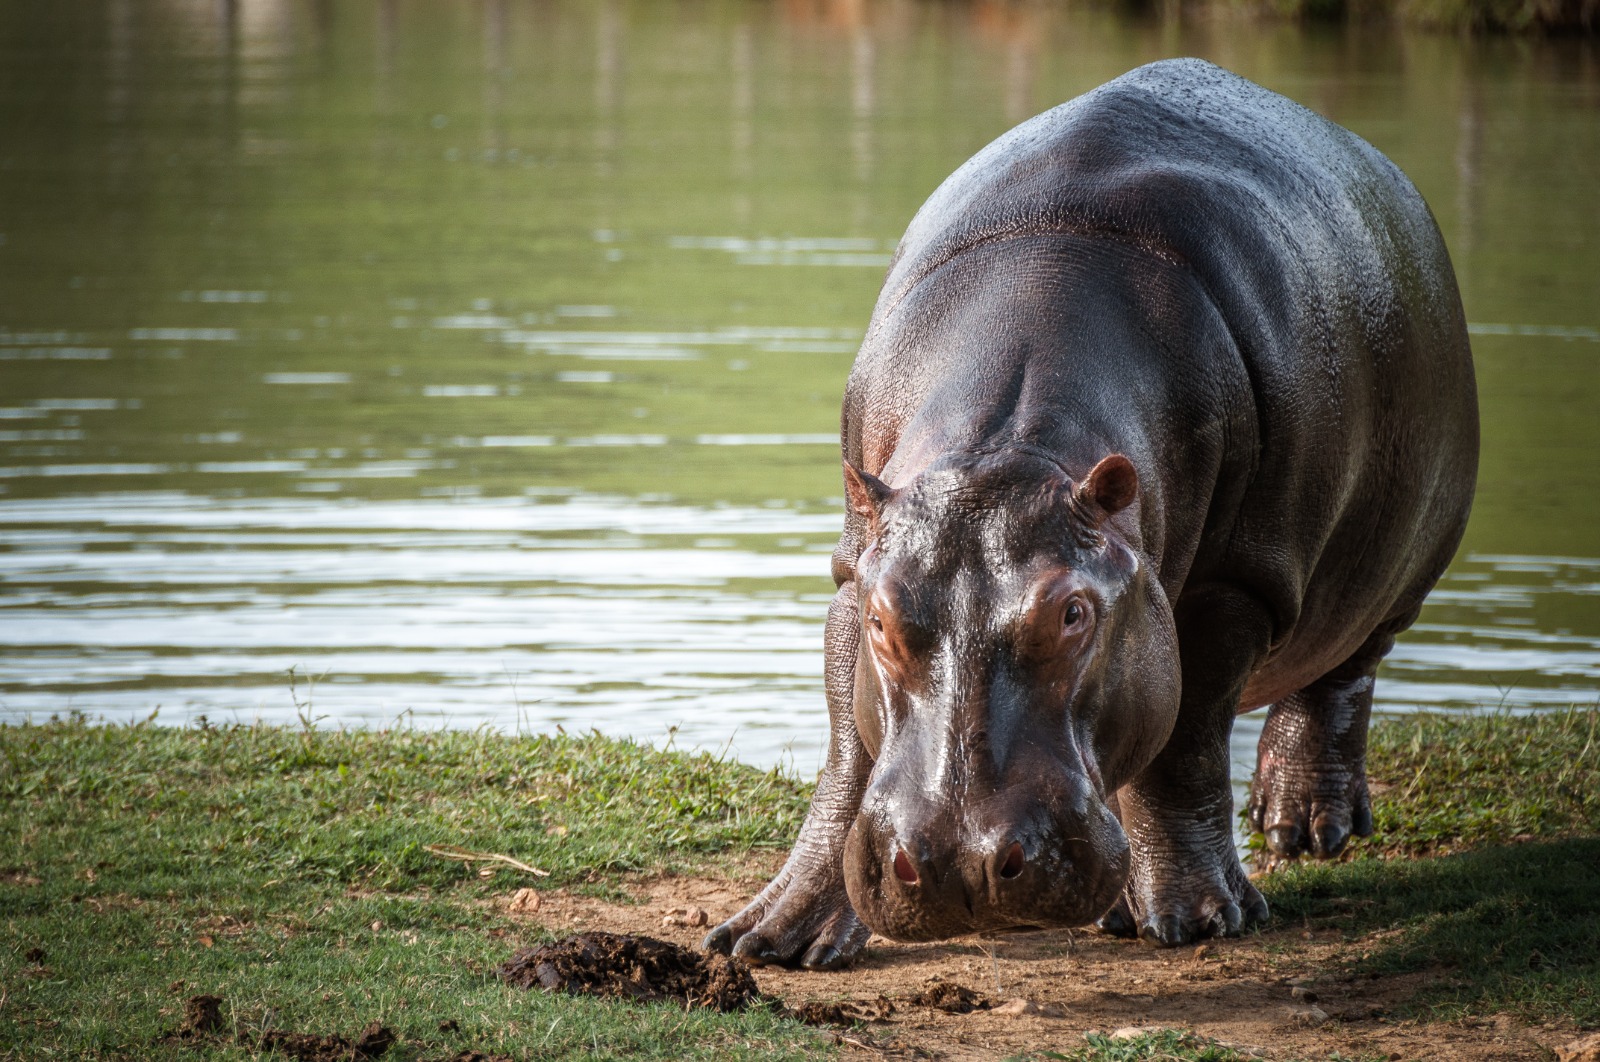 Inicia fase de esterilización del plan de manejo para controlar hipopótamos en Colombia